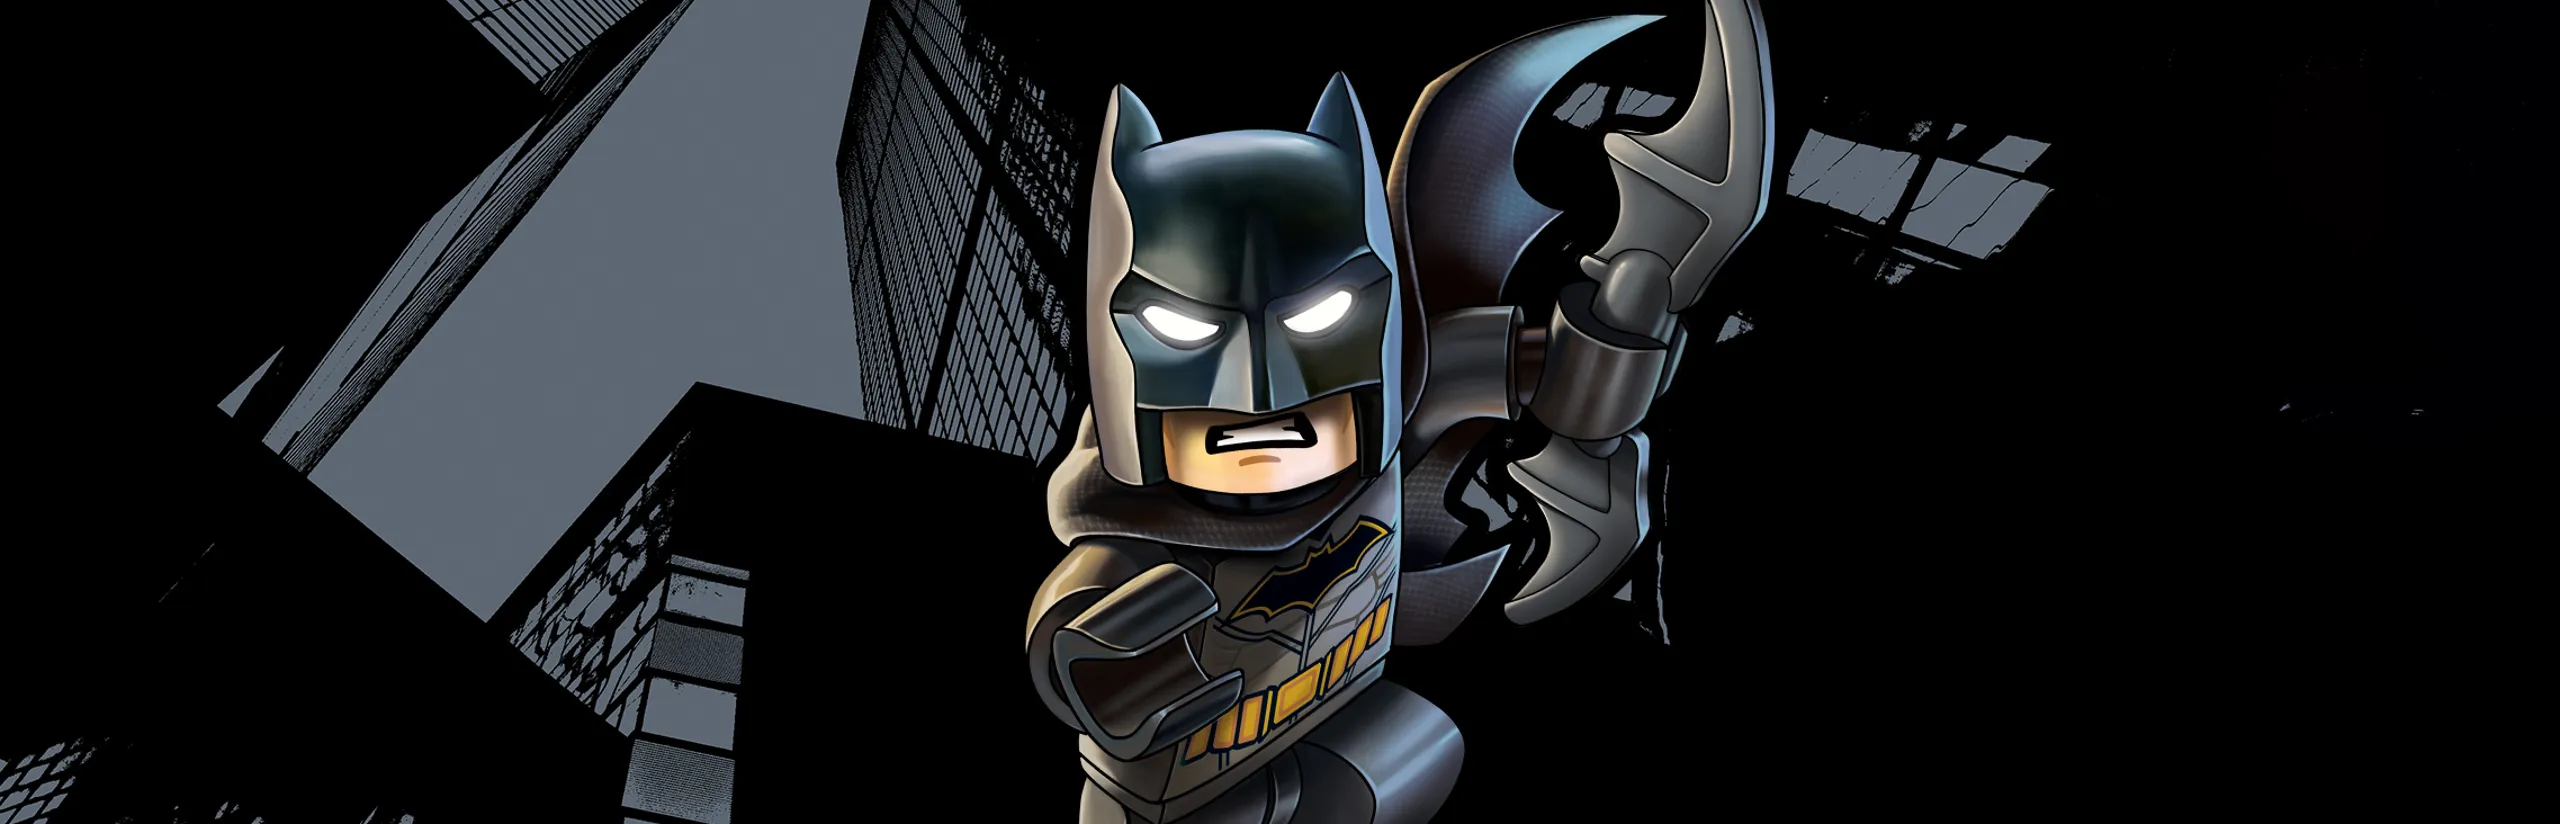 LEGO® The Batman Movie - LEGO.com for kids